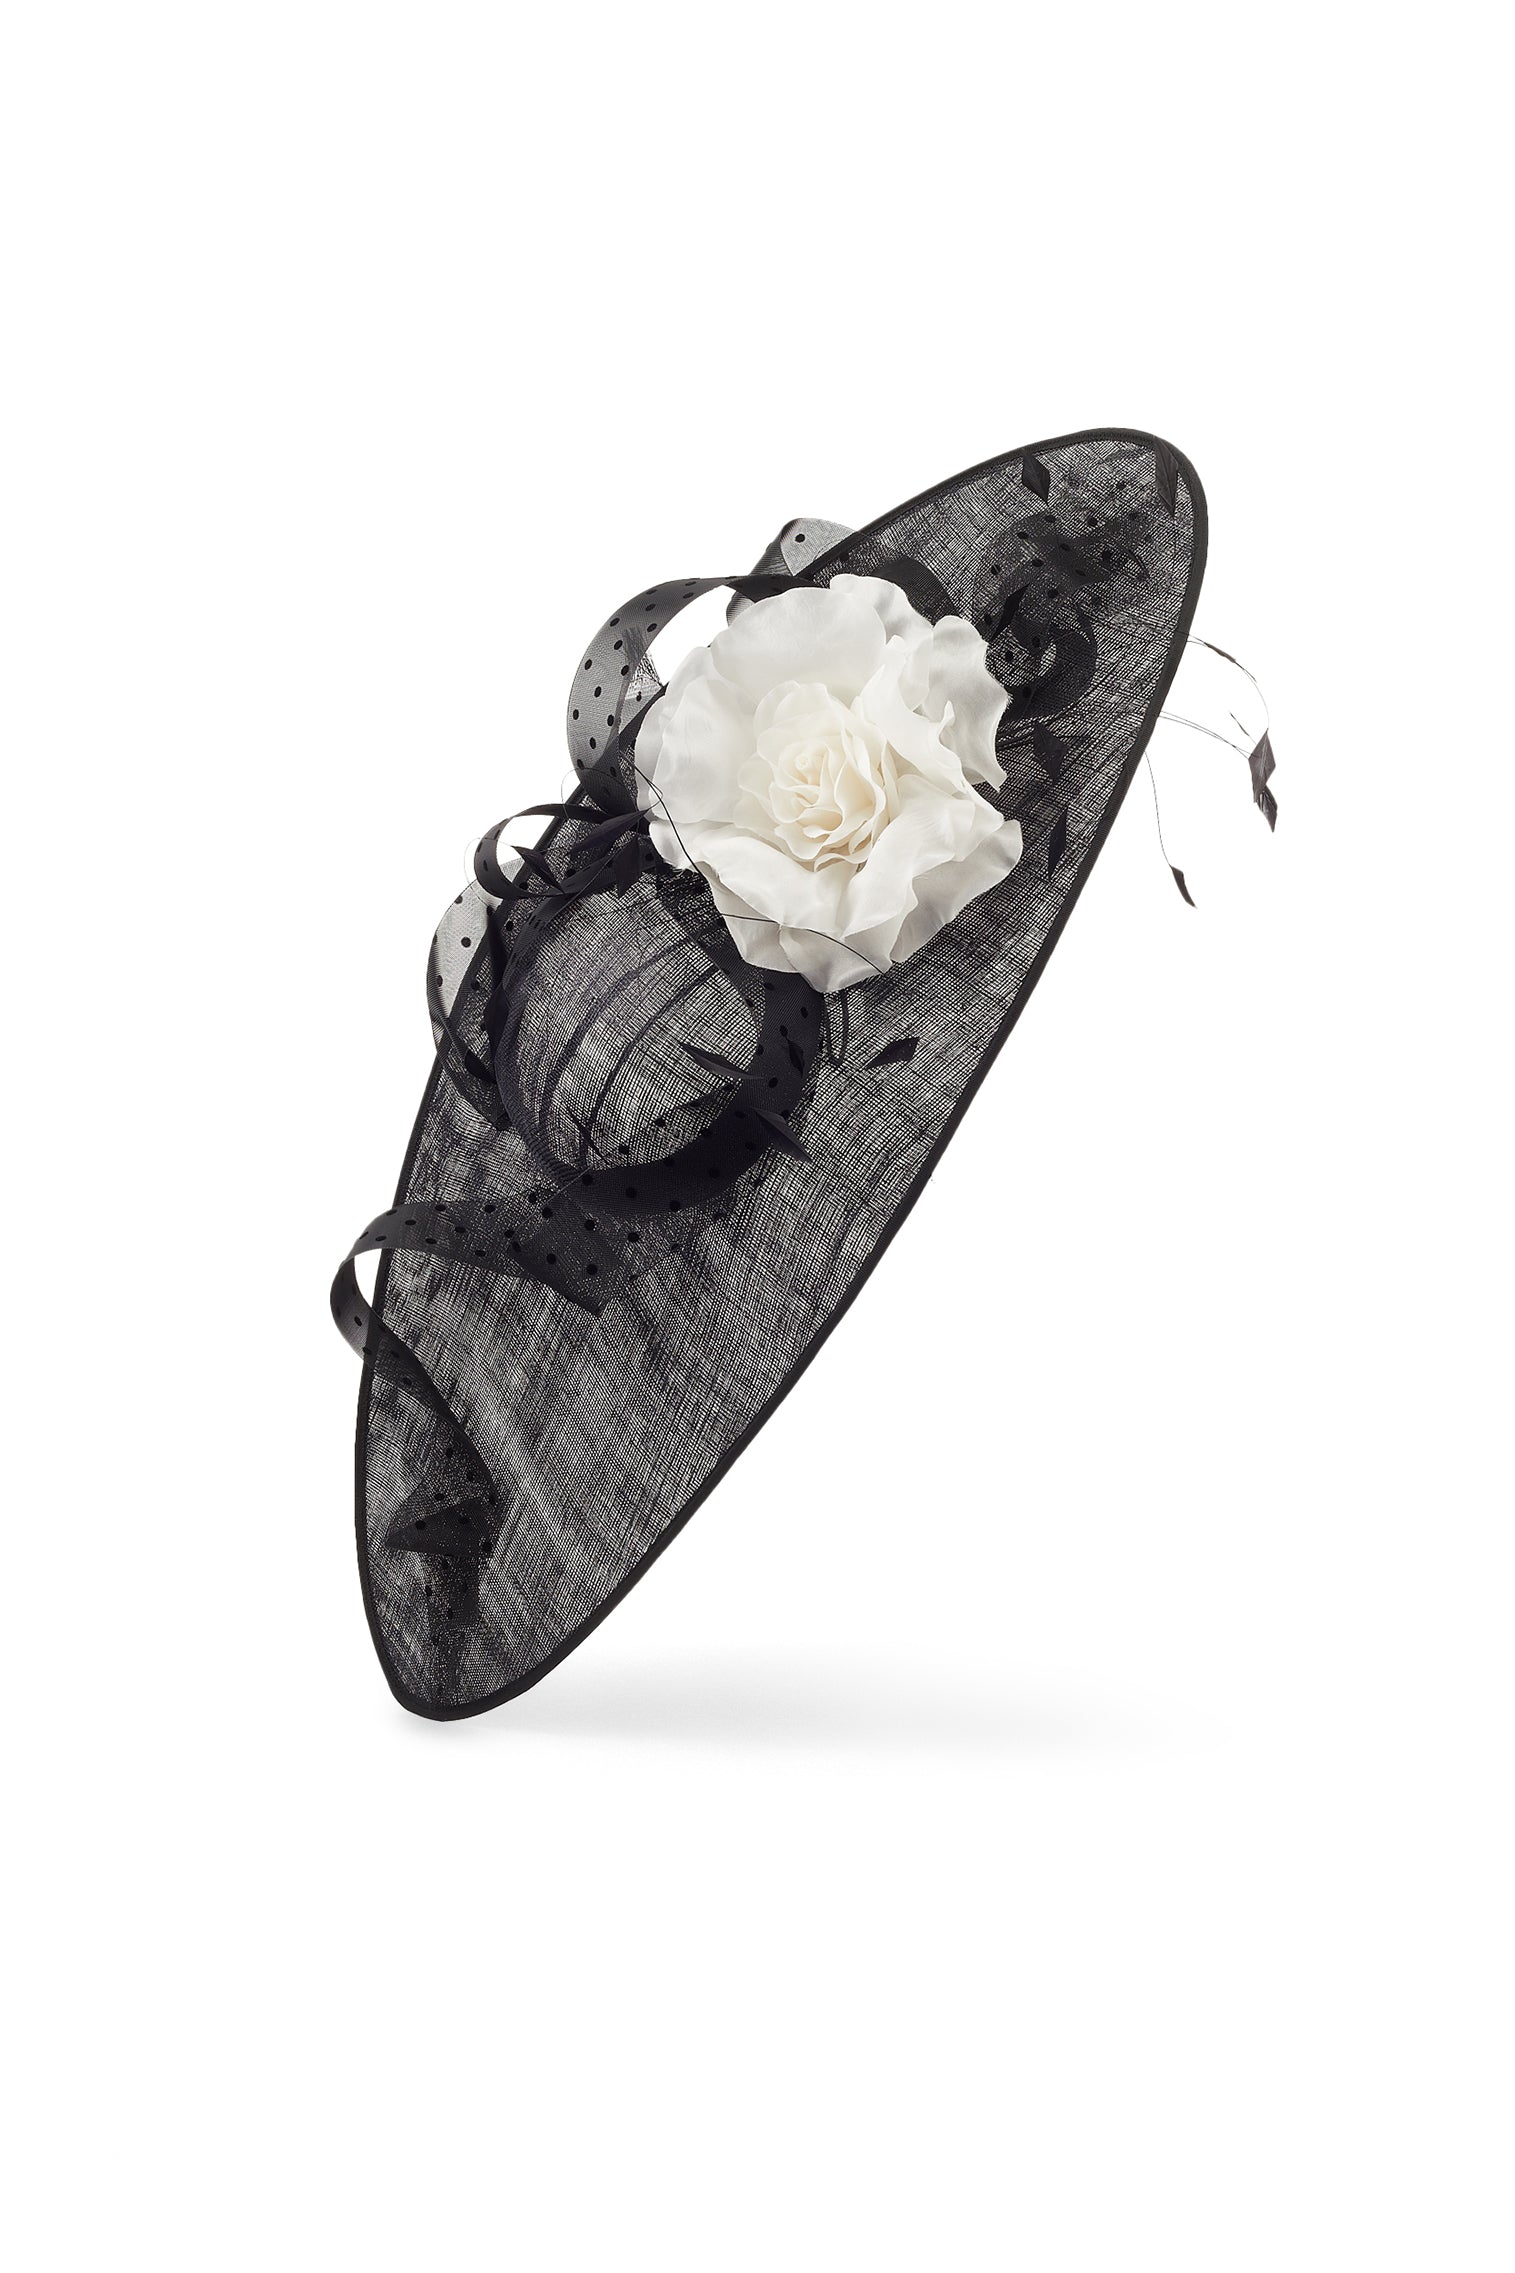 Vanilla Black Slice Hat - New Season Women's Hats - Lock & Co. Hatters London UK